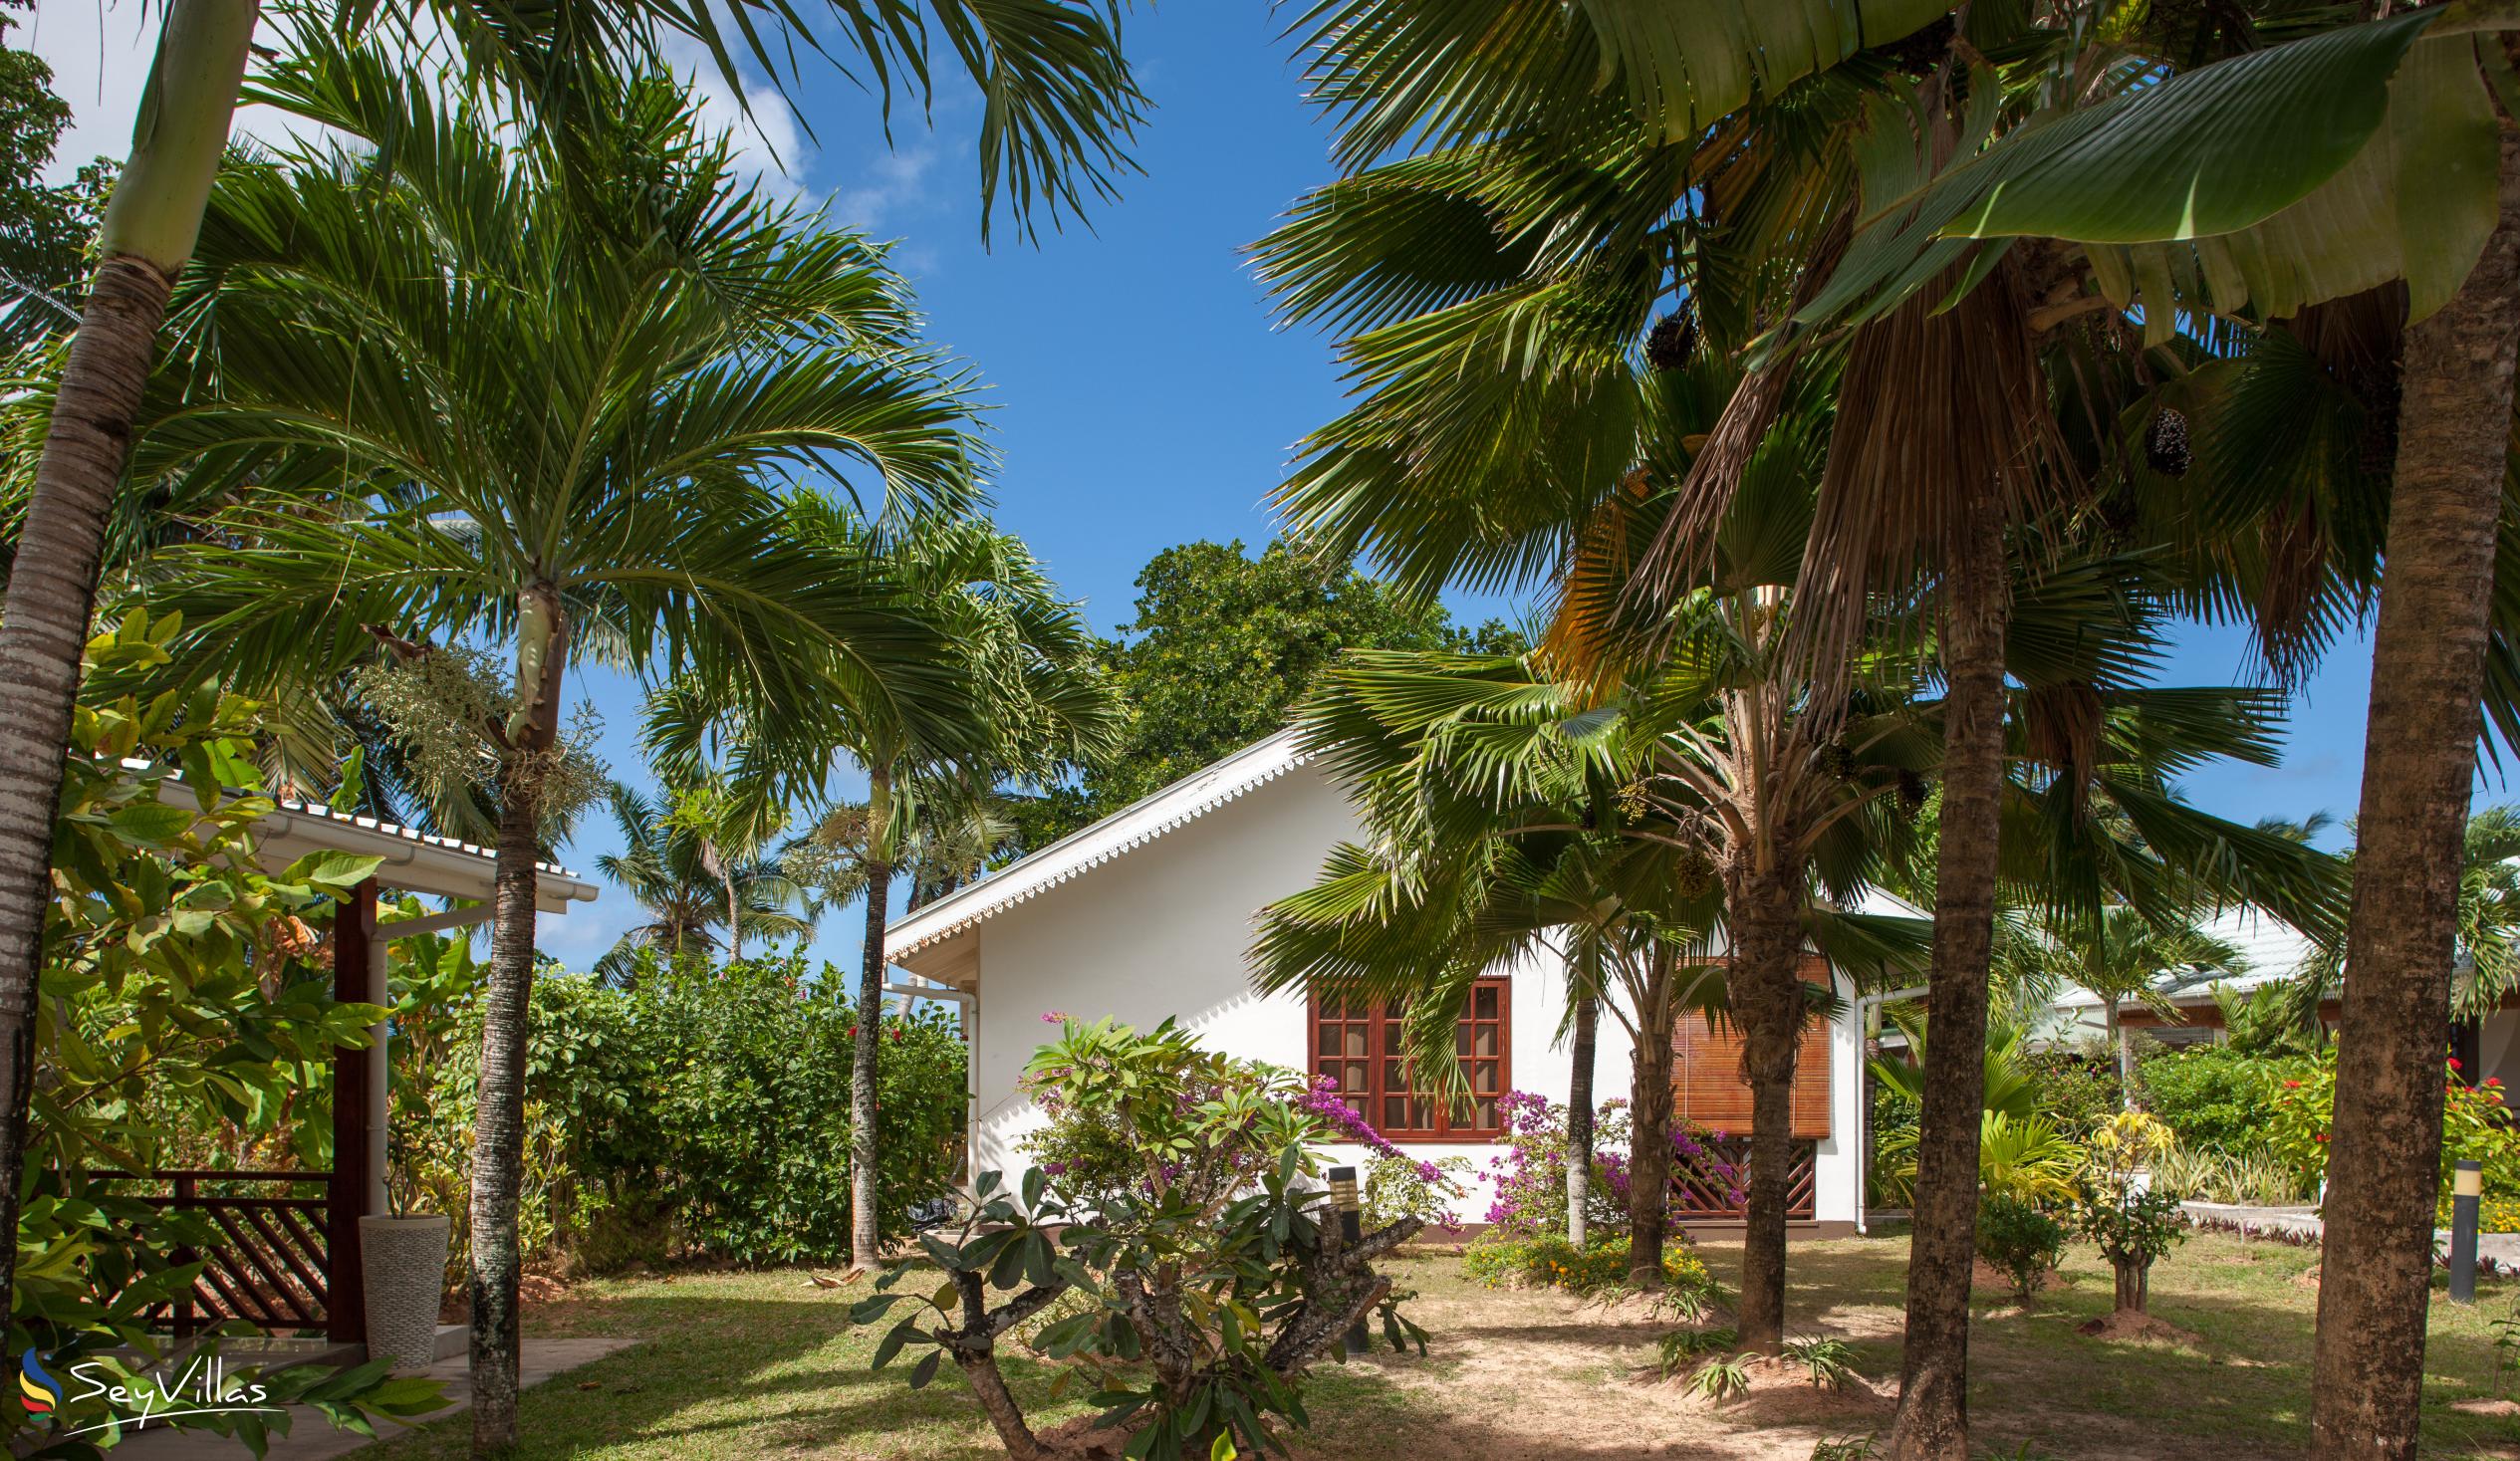 Foto 15: Villas de Mer - Esterno - Praslin (Seychelles)